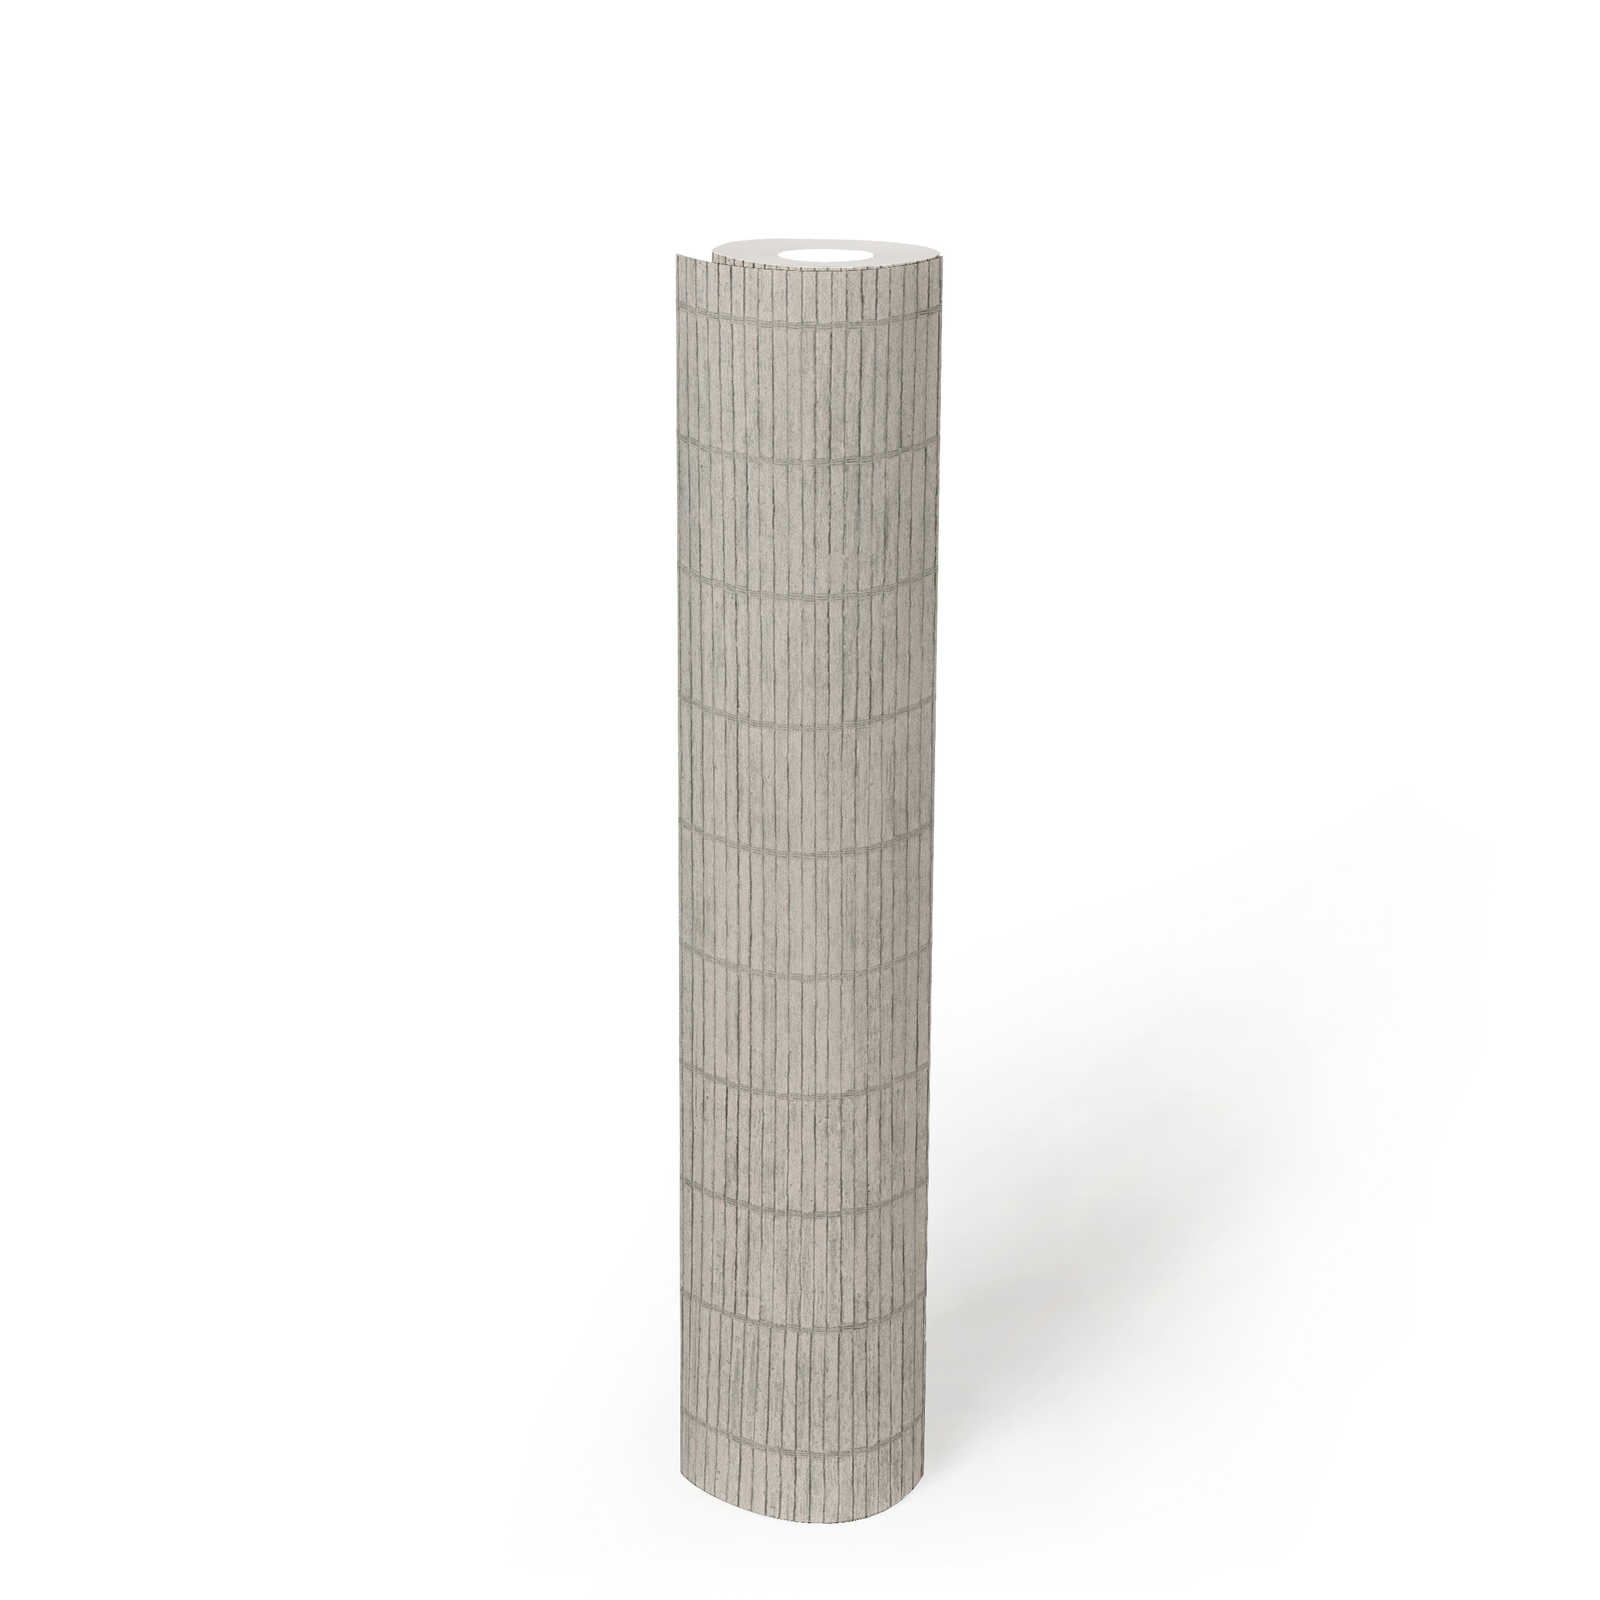             Vliesbehang met bamboe afscheidingslook in Japanse stijl - grijs
        